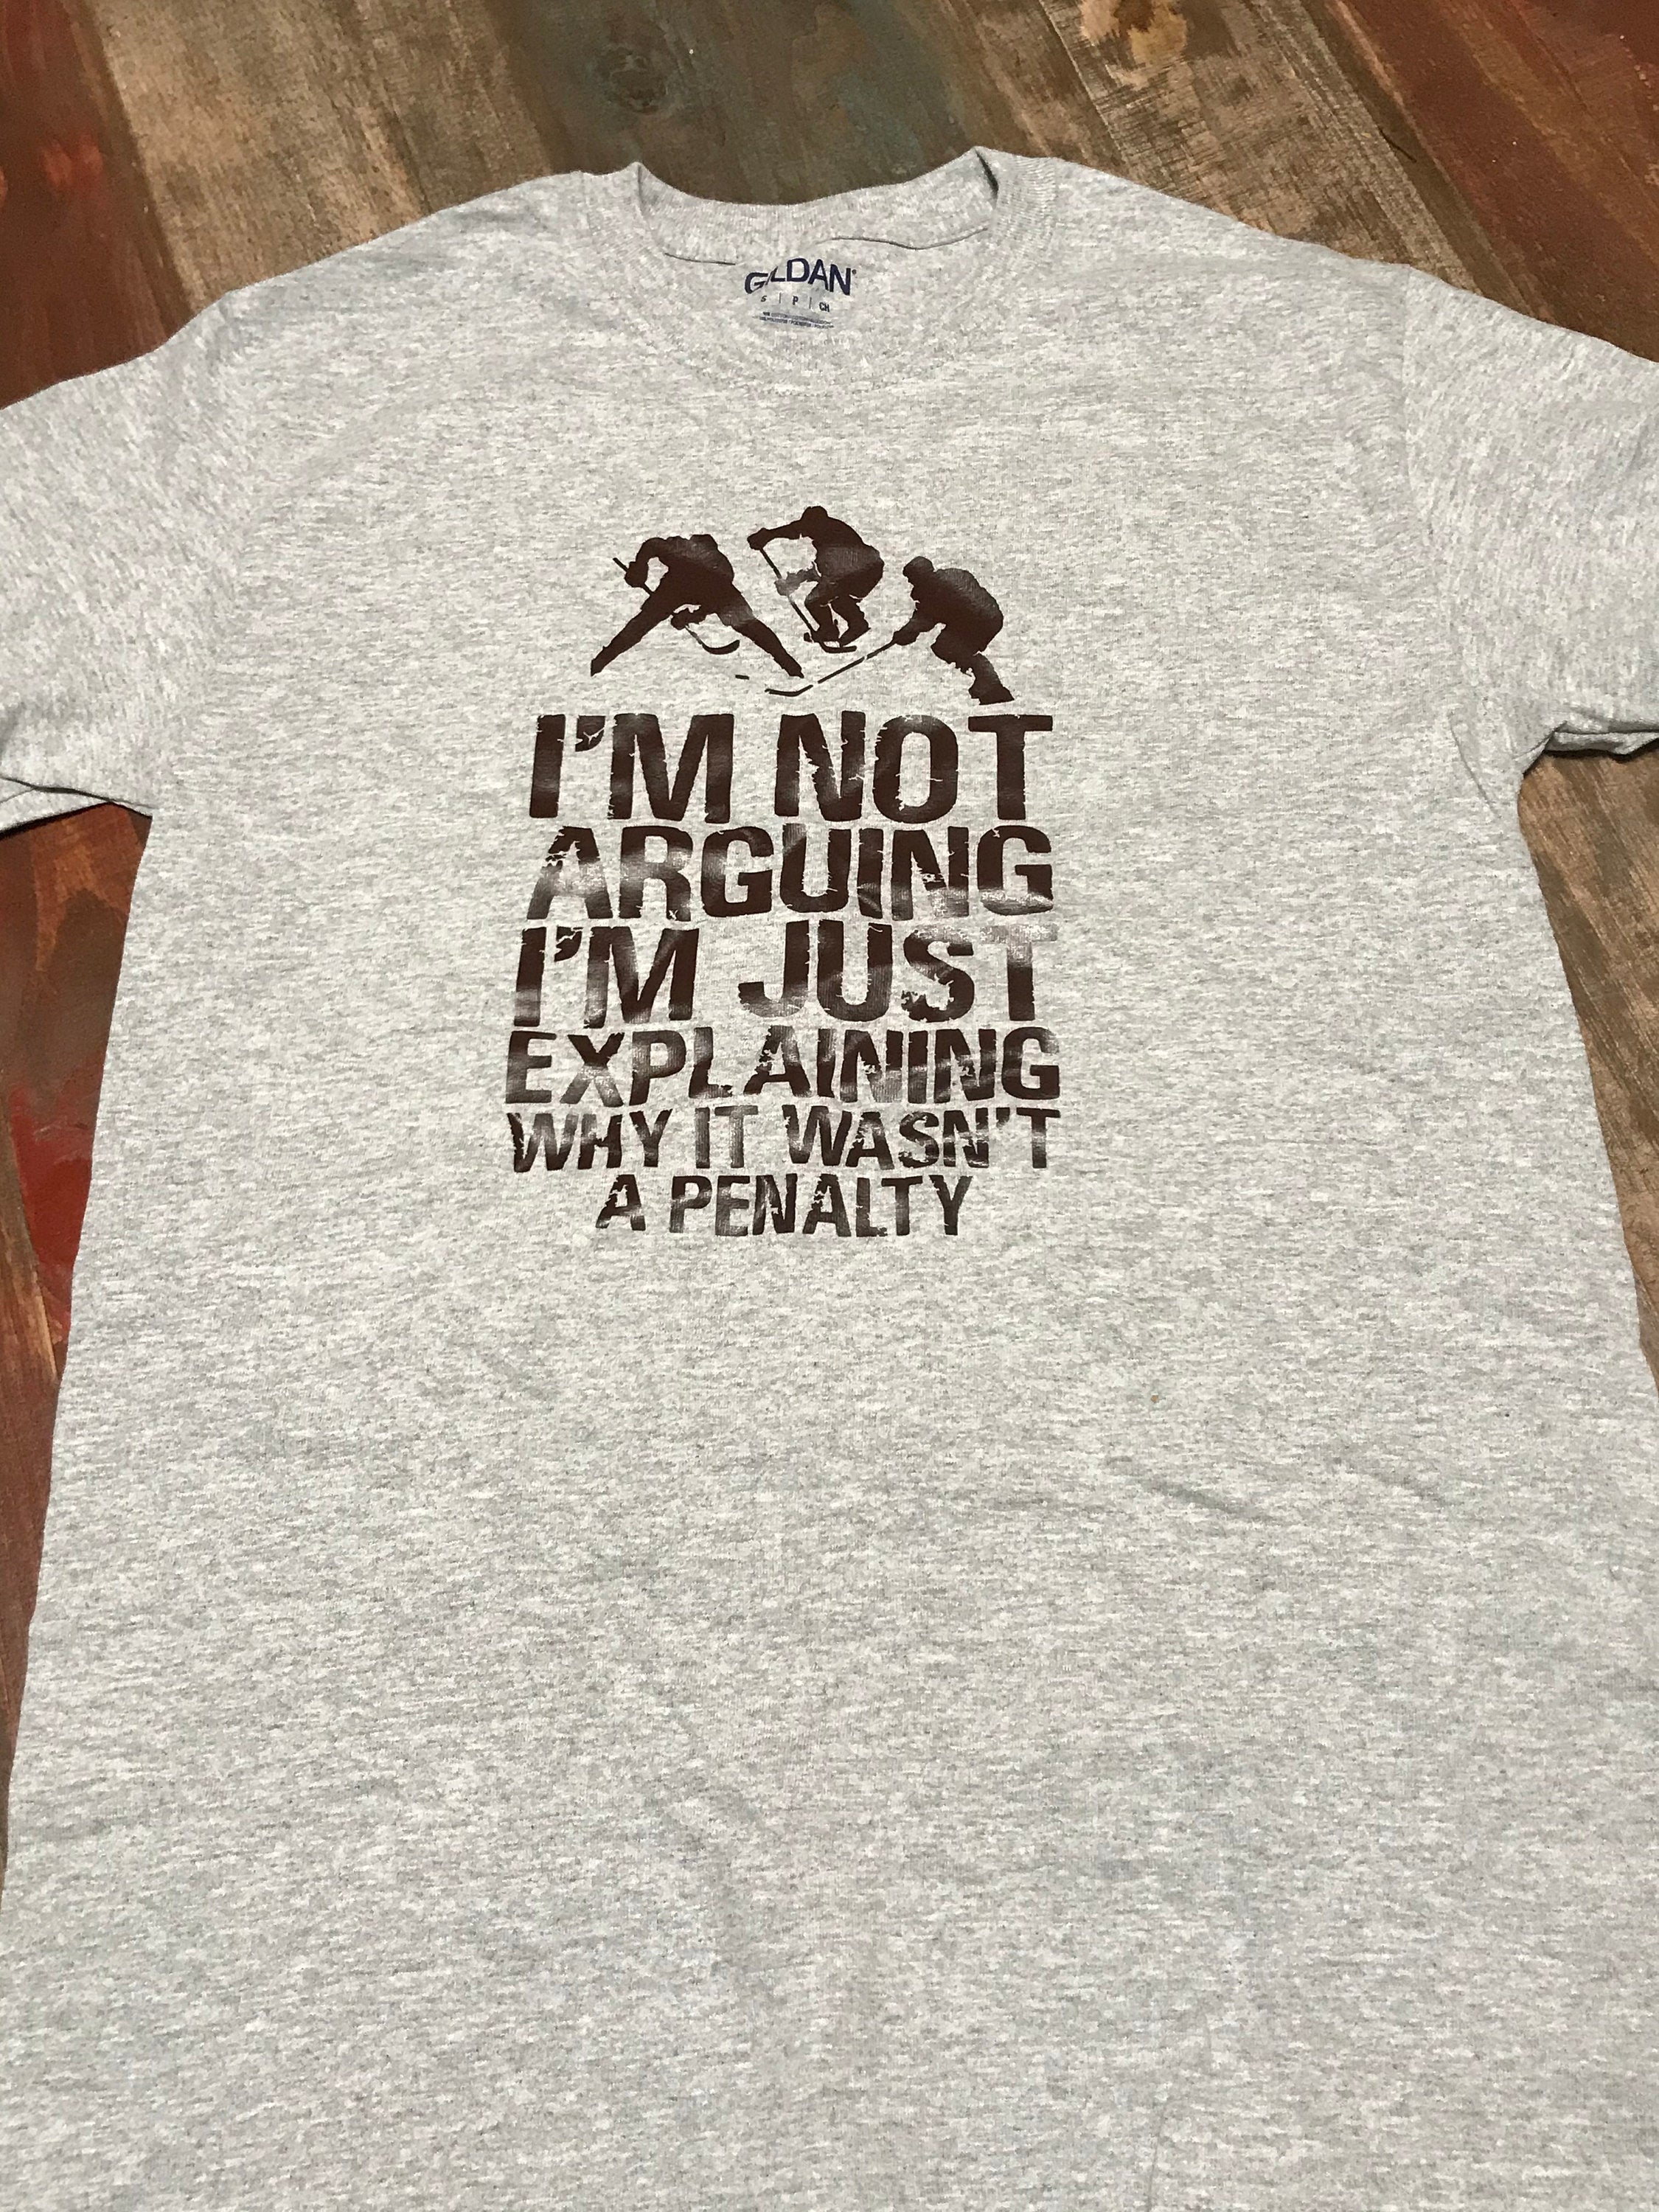 IM NOT ARGUING | Not A Penalty - Unisex Crewneck T-shirt